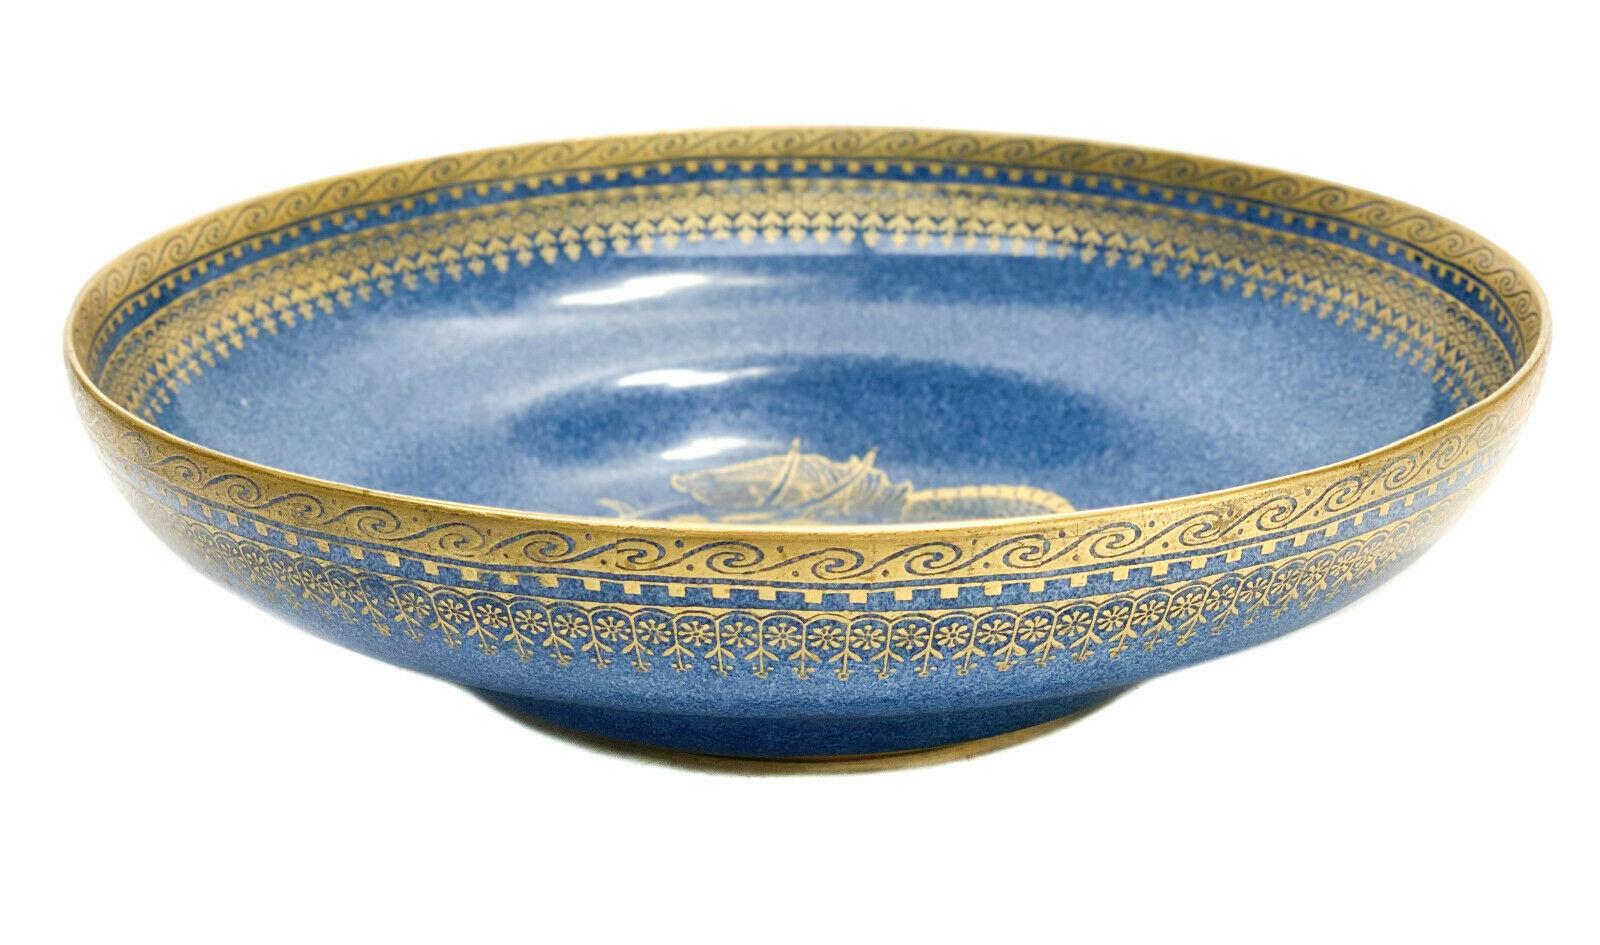 Royal Worcester Angleterre bol dragon en porcelaine bleu doré, 1918.

Le fond bleu pervenche est alimenté par un dragon figuré et doré au centre. Vagues et fleurs dorées sur le pourtour. Marque Royal Worcester England datée de